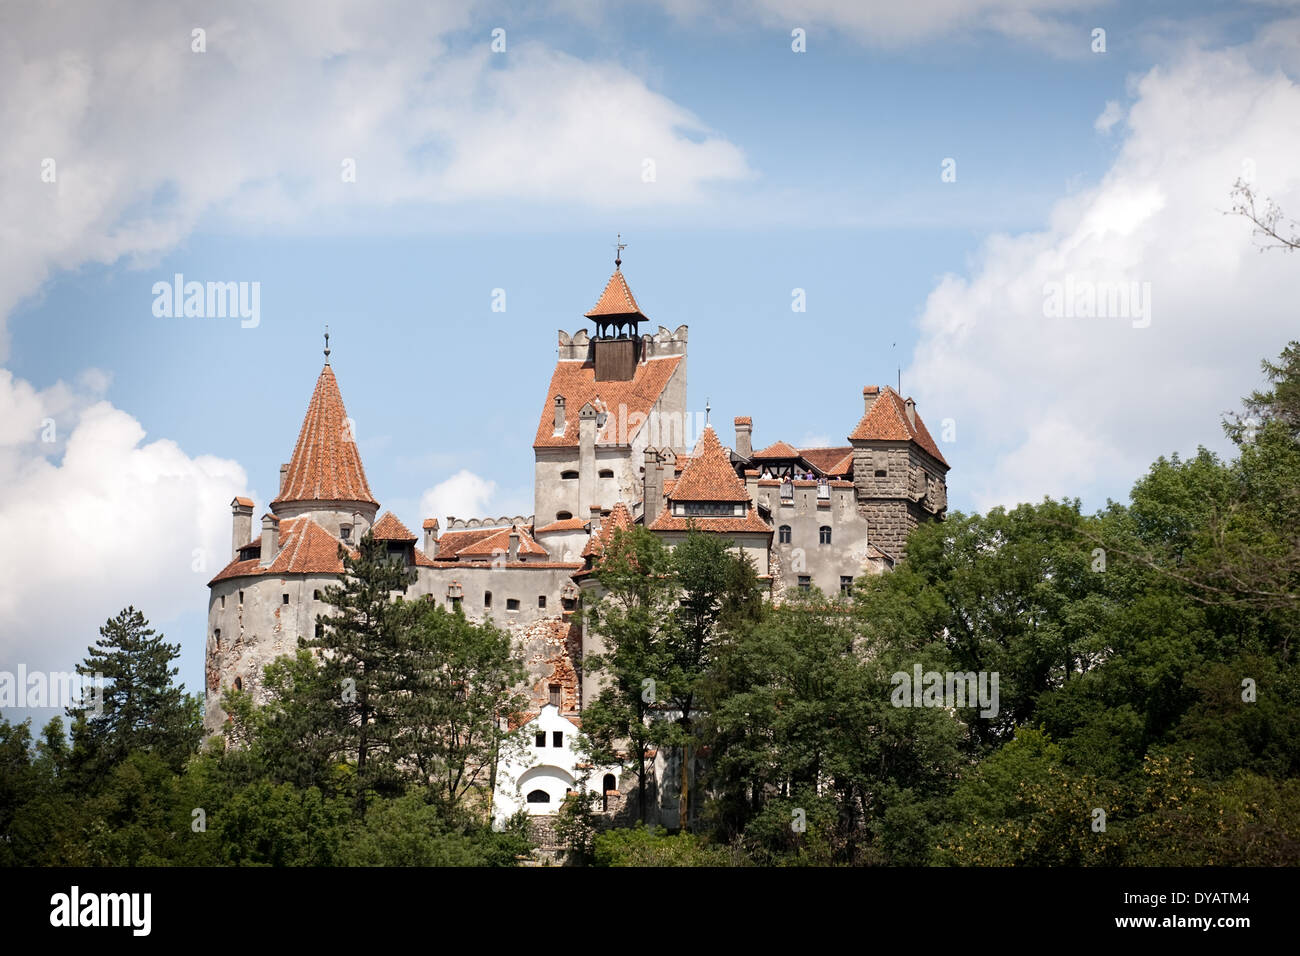 front view of Bran medieval castle, Wallachia, Romania Stock Photo